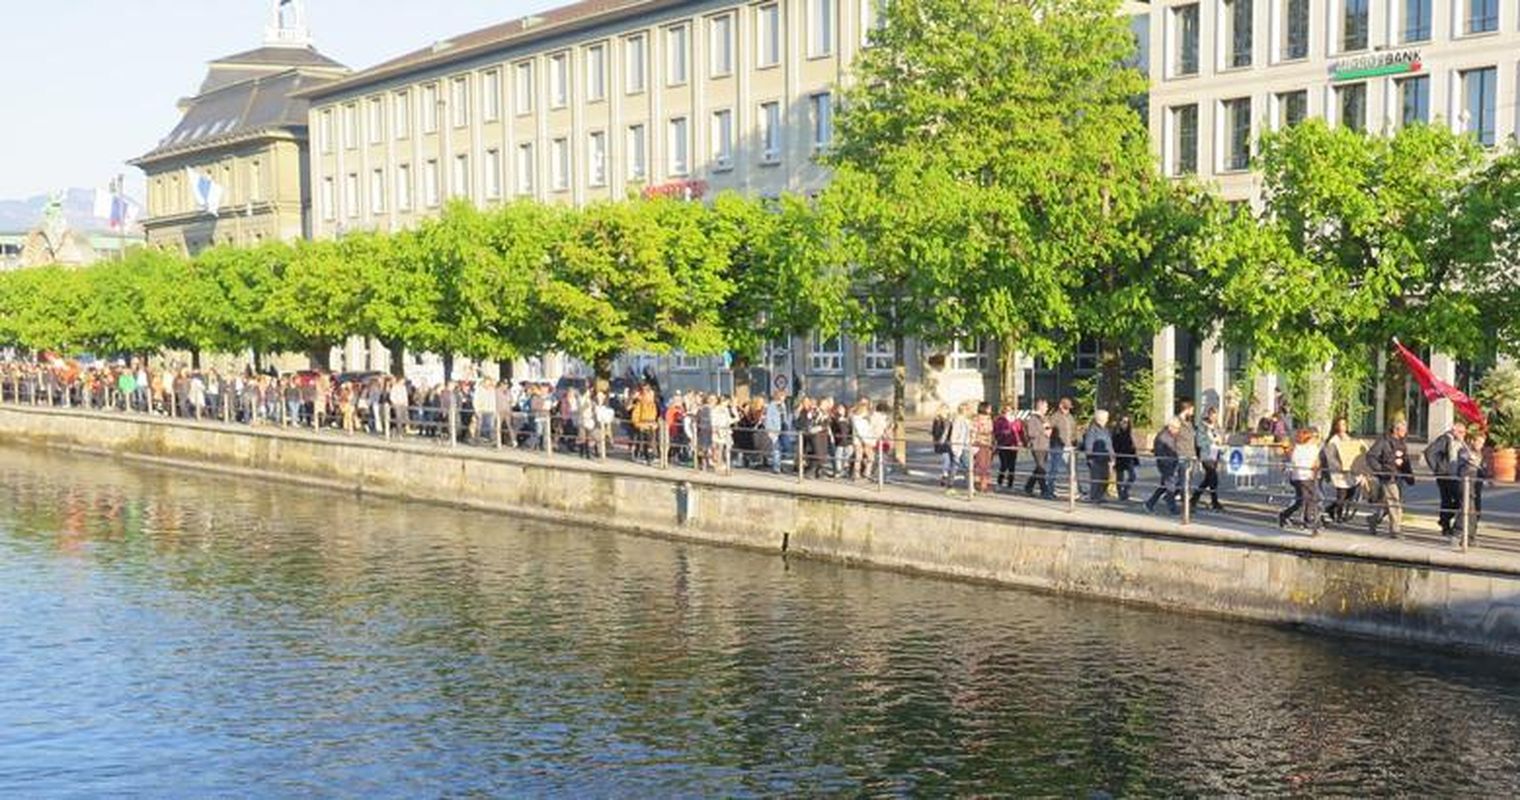 Corona-Skeptiker planen Protest in Luzern –  Linke rufen zu Gegen-Demo auf